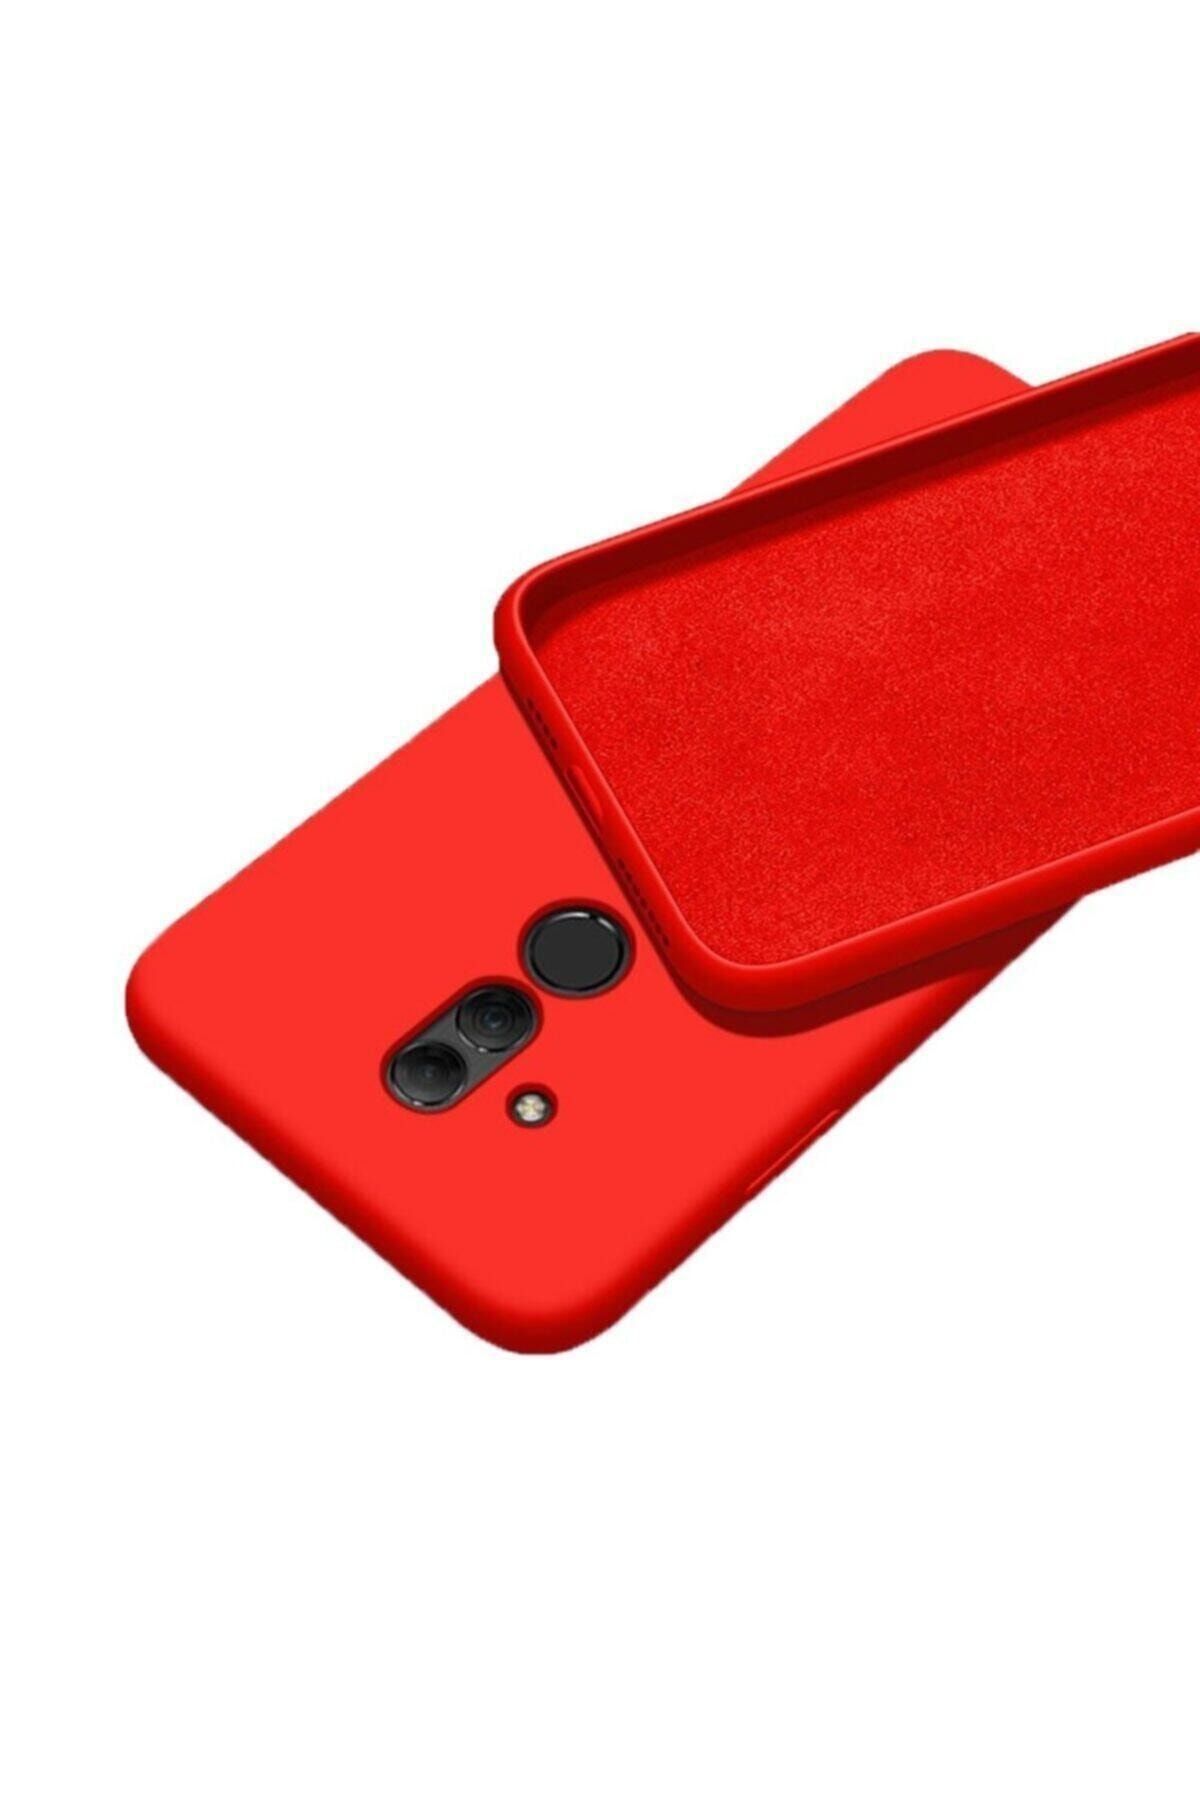 Mopal Huawei Mate 20 Lite Uyumlu Kırmızı Içi Kadife Lansman Silikon Kılıf